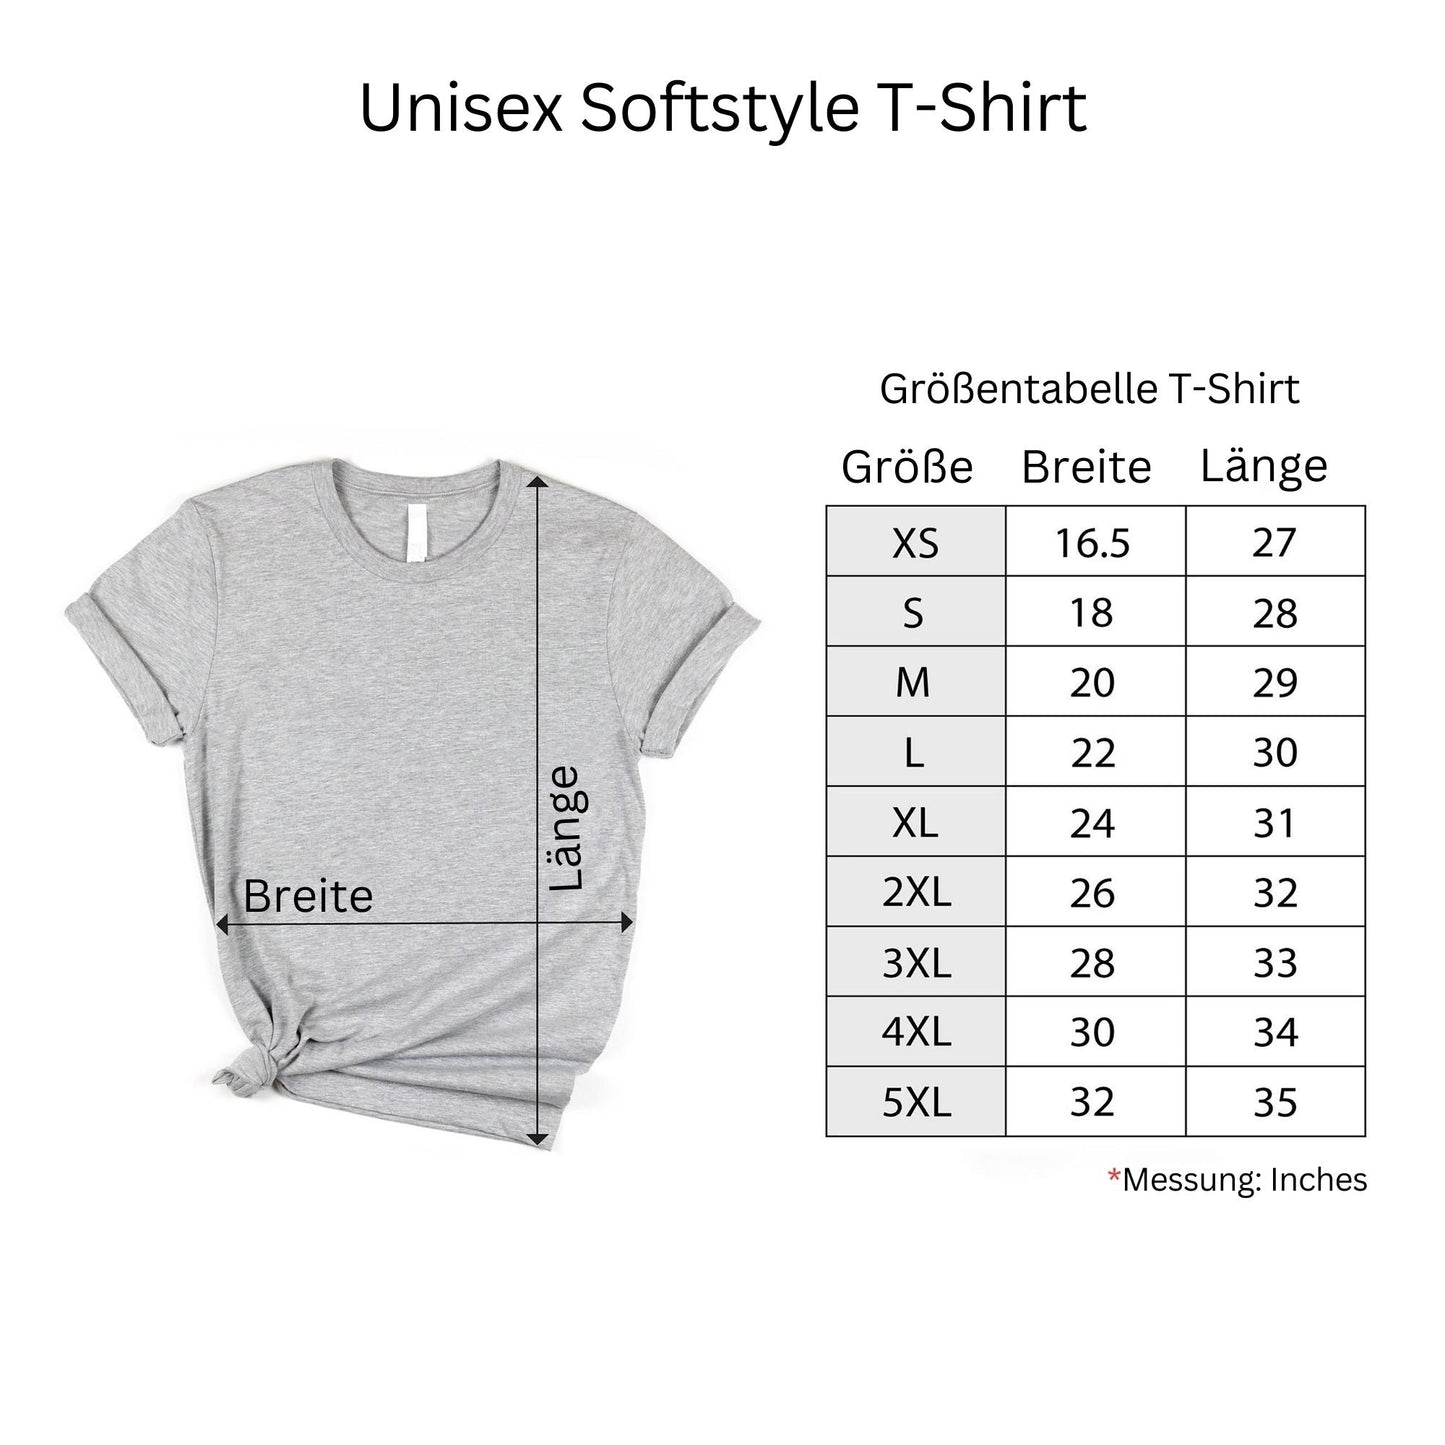 Bester Papa Aller Zeiten - Personalisiertes T-Shirt für Vatertag